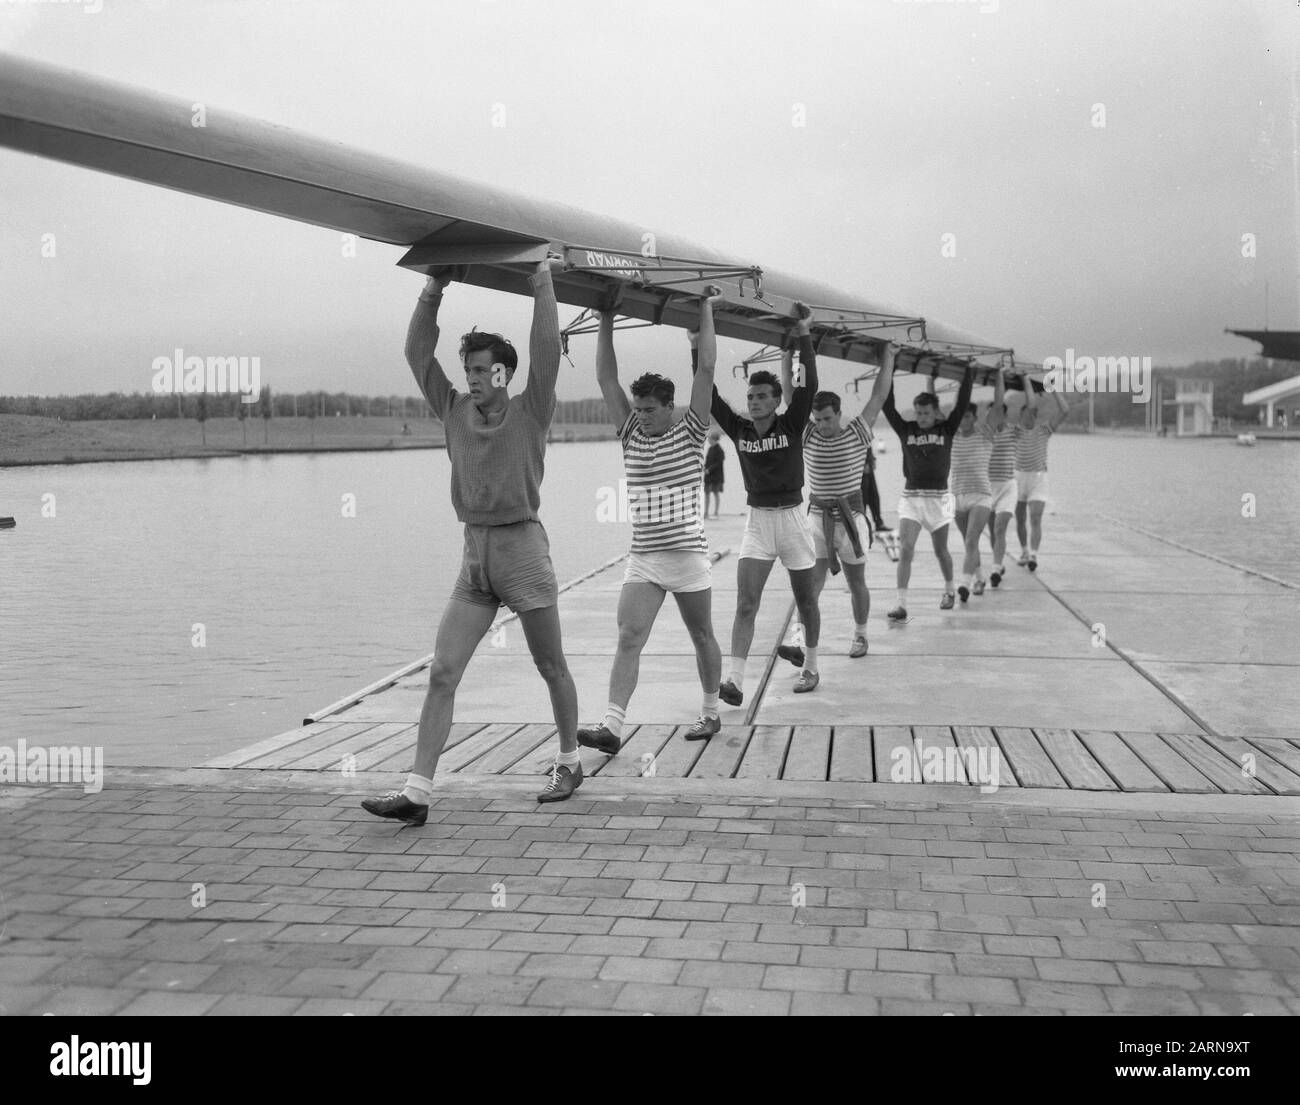 European Rowing Championships Amsterdam, Czech Republic let go Water Data: 24 agosto 1954 luogo: Amsterdam, Noord-Holland Parole Chiave: Campionati di canottaggio, ACQUA, barche Foto Stock